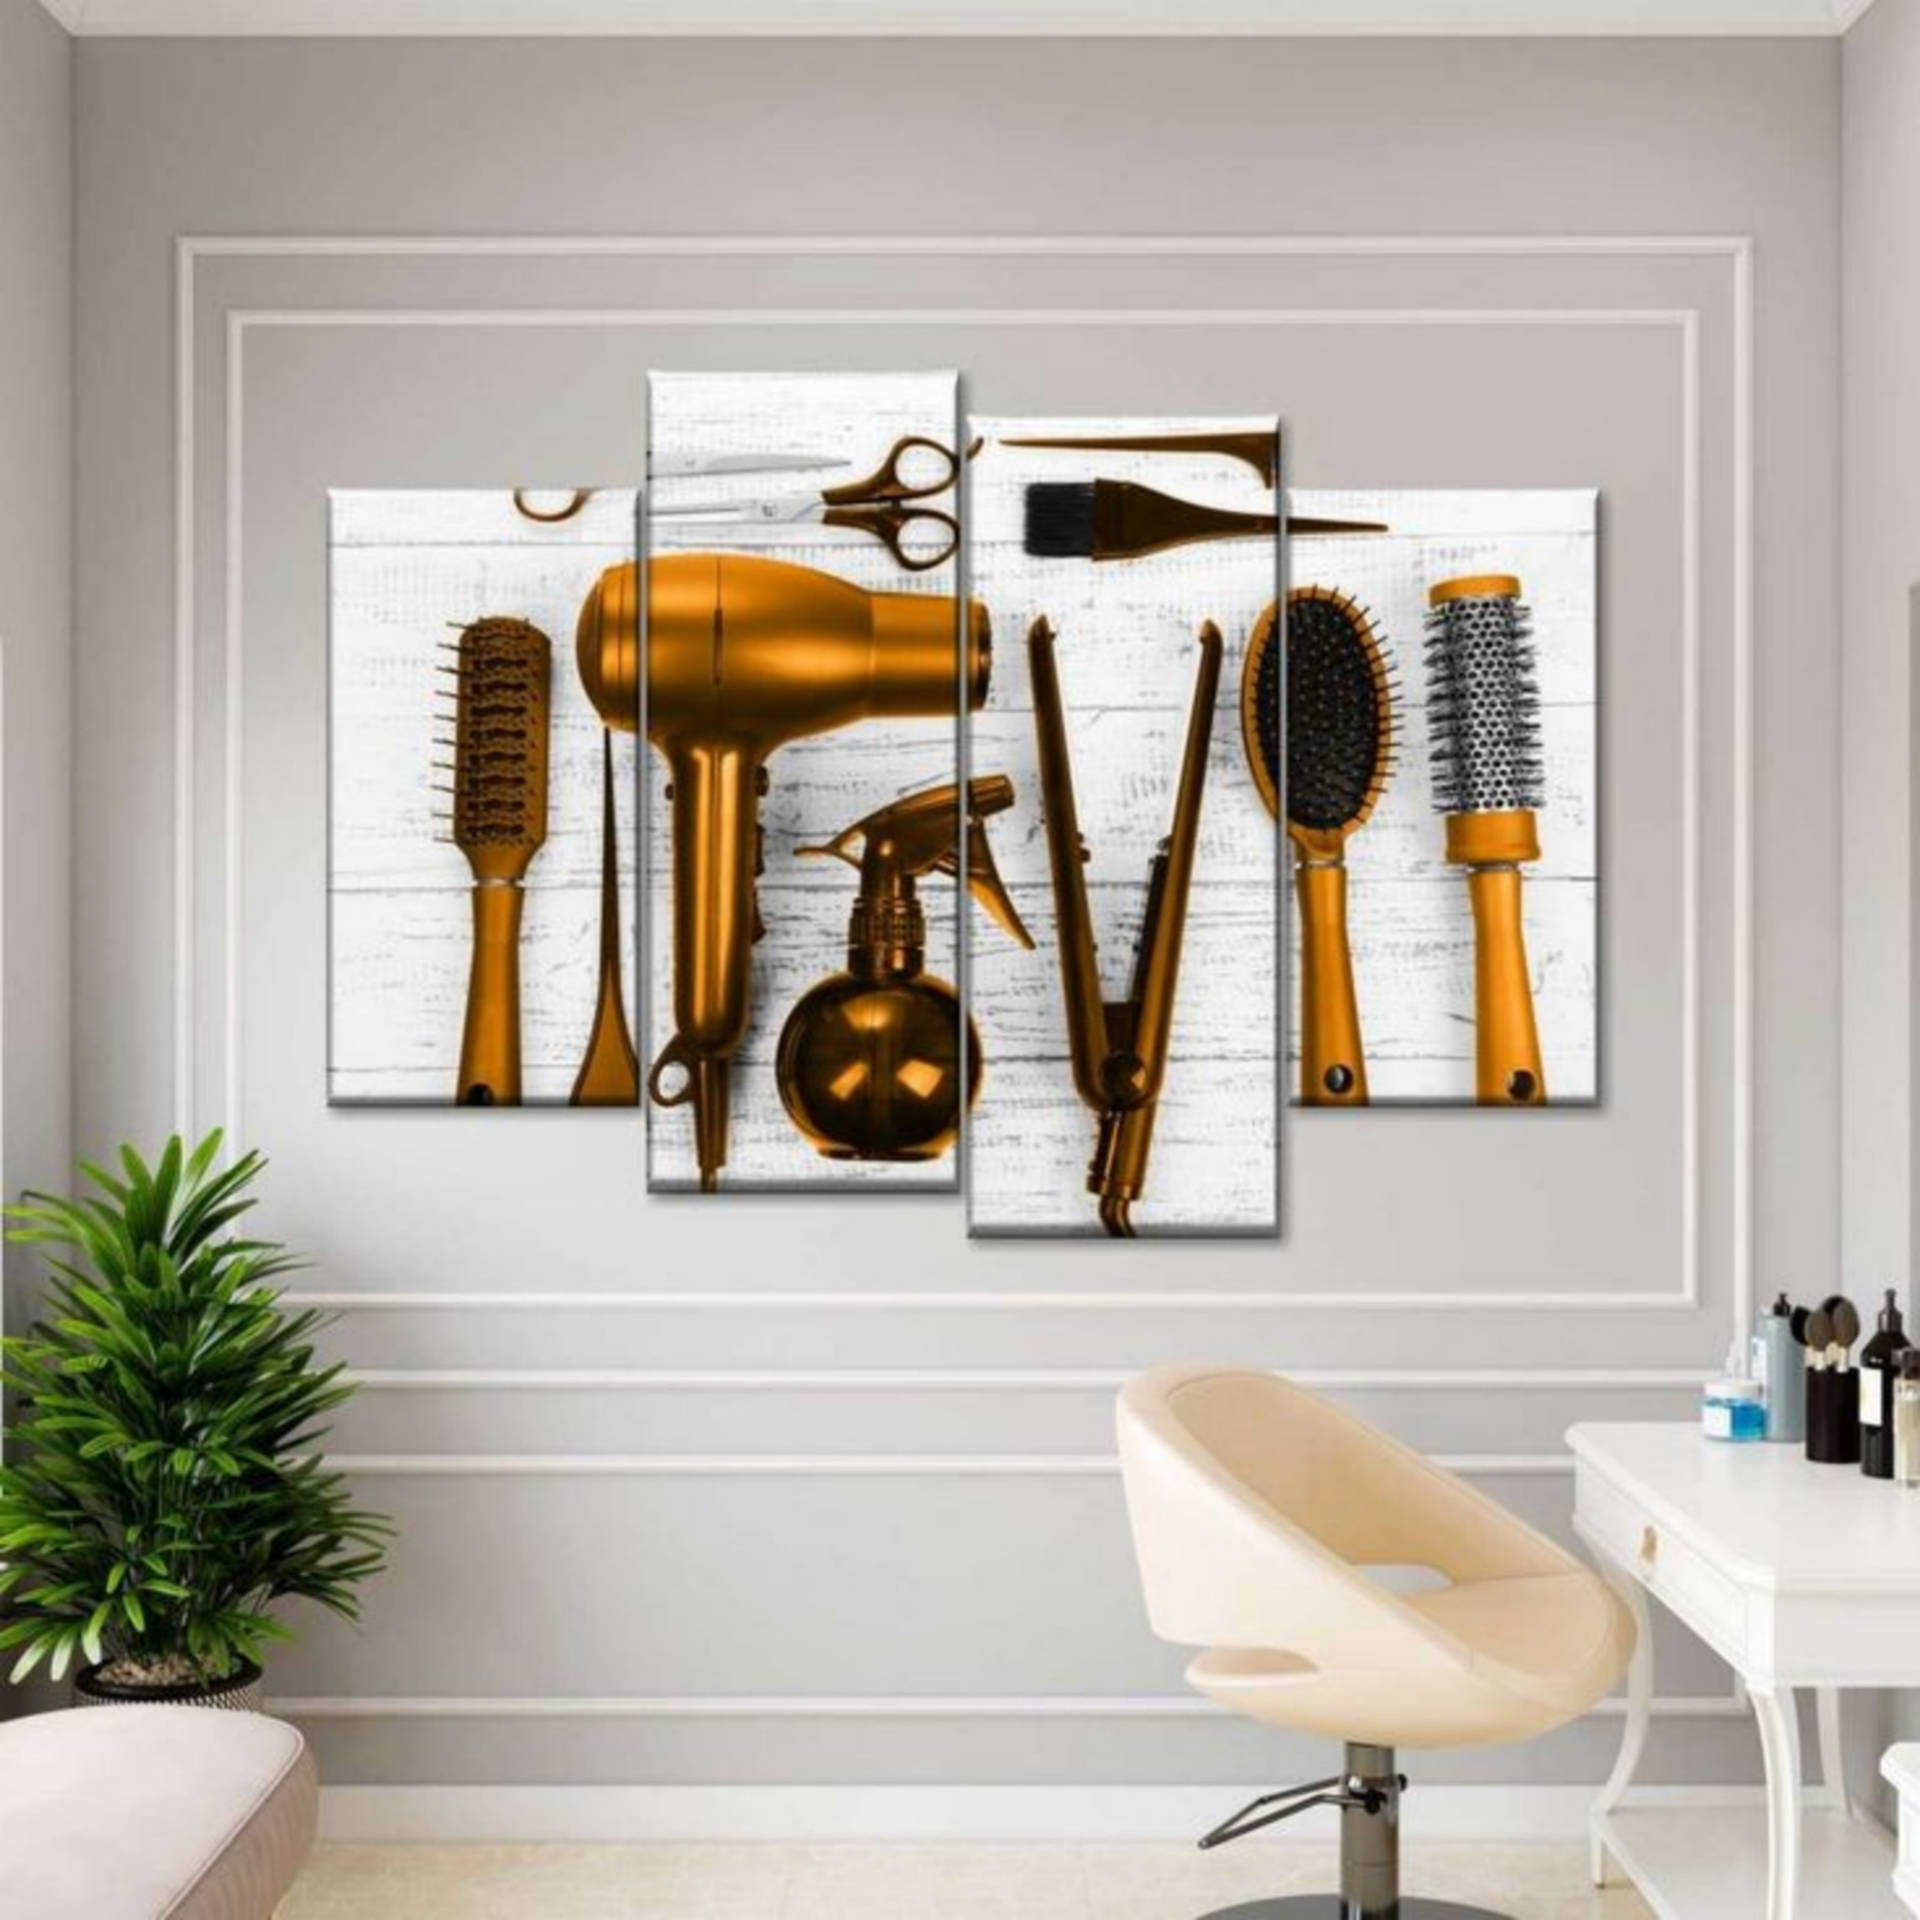 Download Wooden Hair Salon Wall Frame Wallpaper 